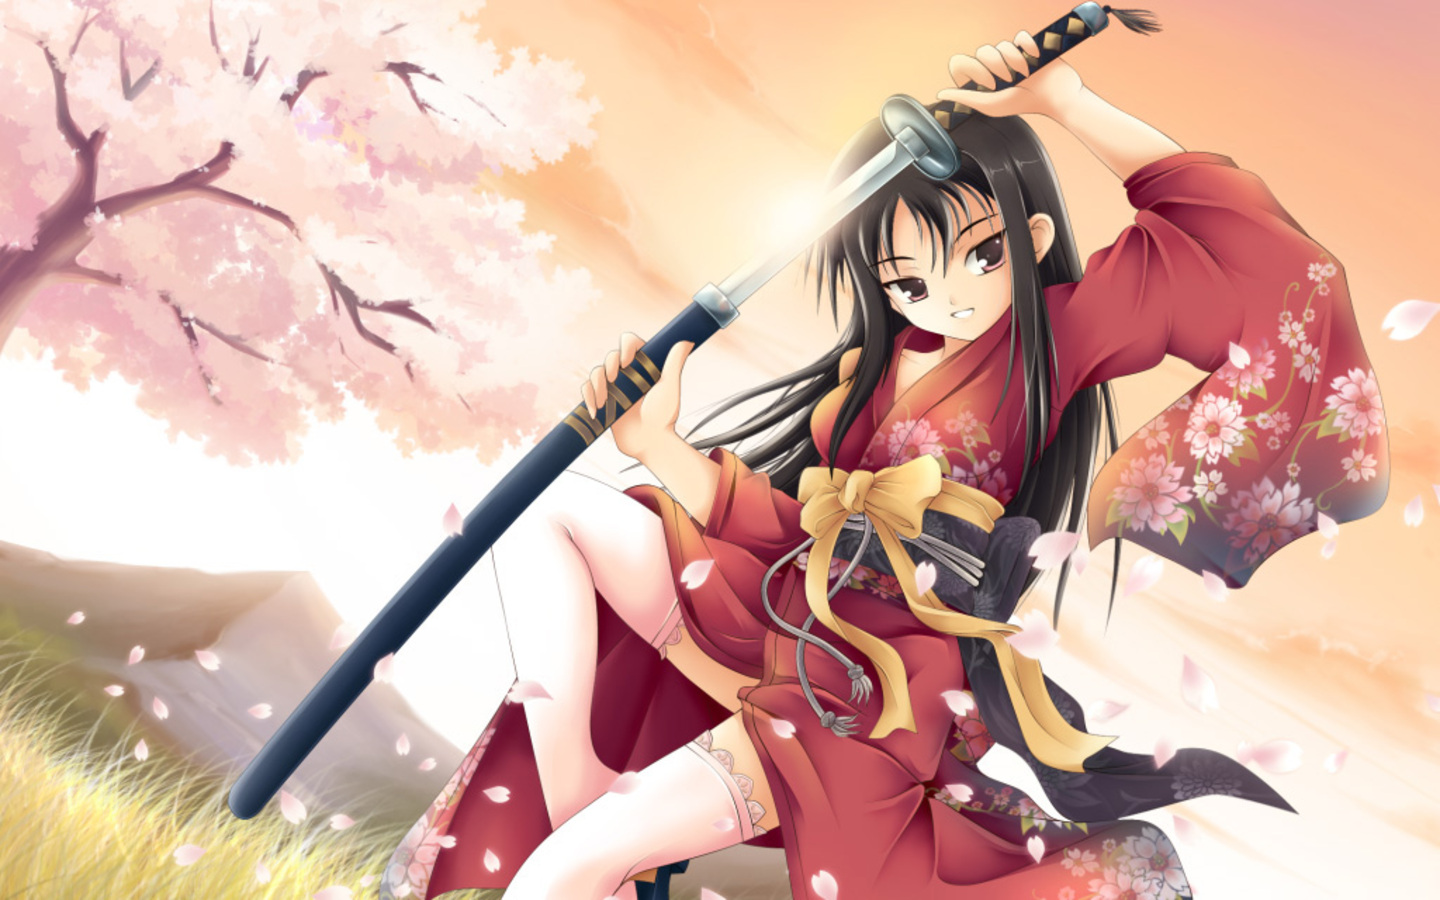 Anime Warrior Wallpaper 1440x900 Anime Warrior Girl Holding Sword 1440x900